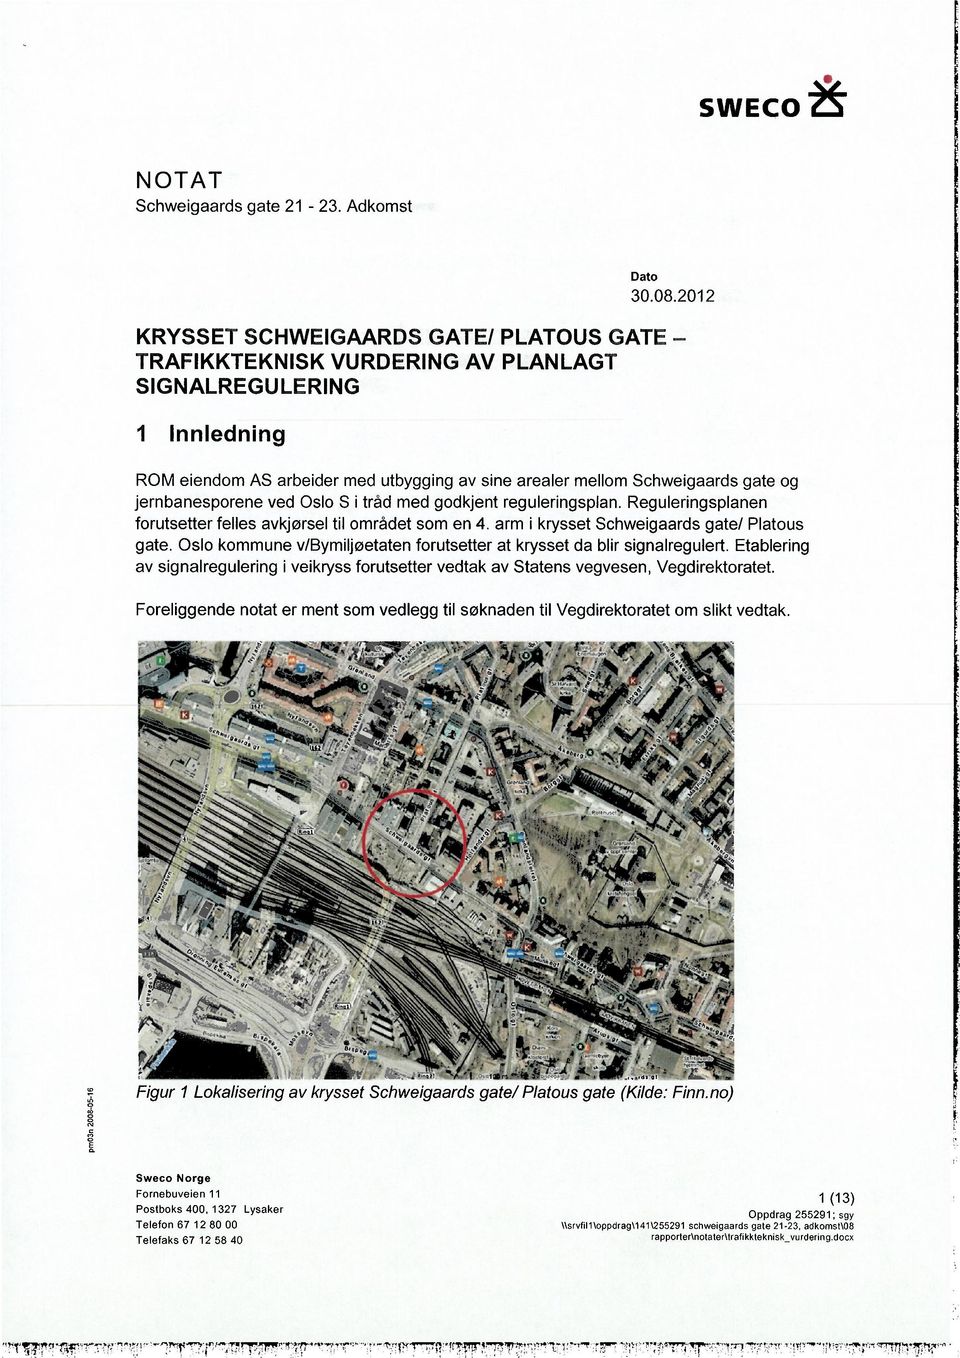 Oslo kommune v/bymiljøetaten forutsetter at krysset da blir signalregulert. Etablering av signalregulering i veikryss forutsetter vedtak av Statens vegvesen, Vegdirektoratet.